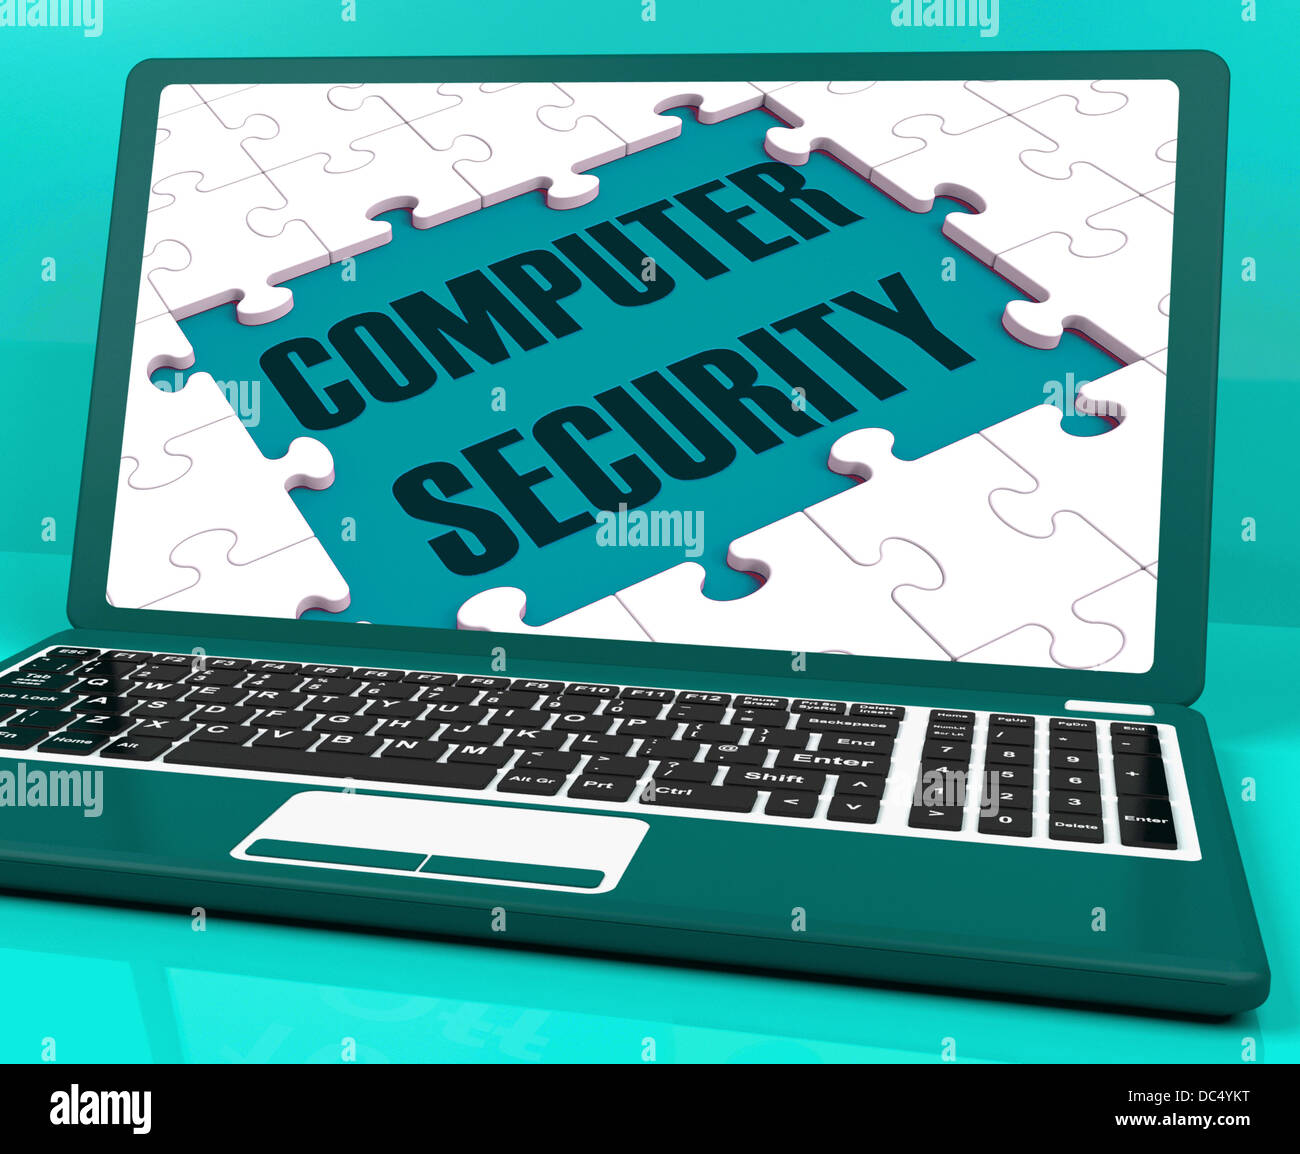 La sécurité informatique sur ordinateur portable montrant des analyses antivirus Banque D'Images